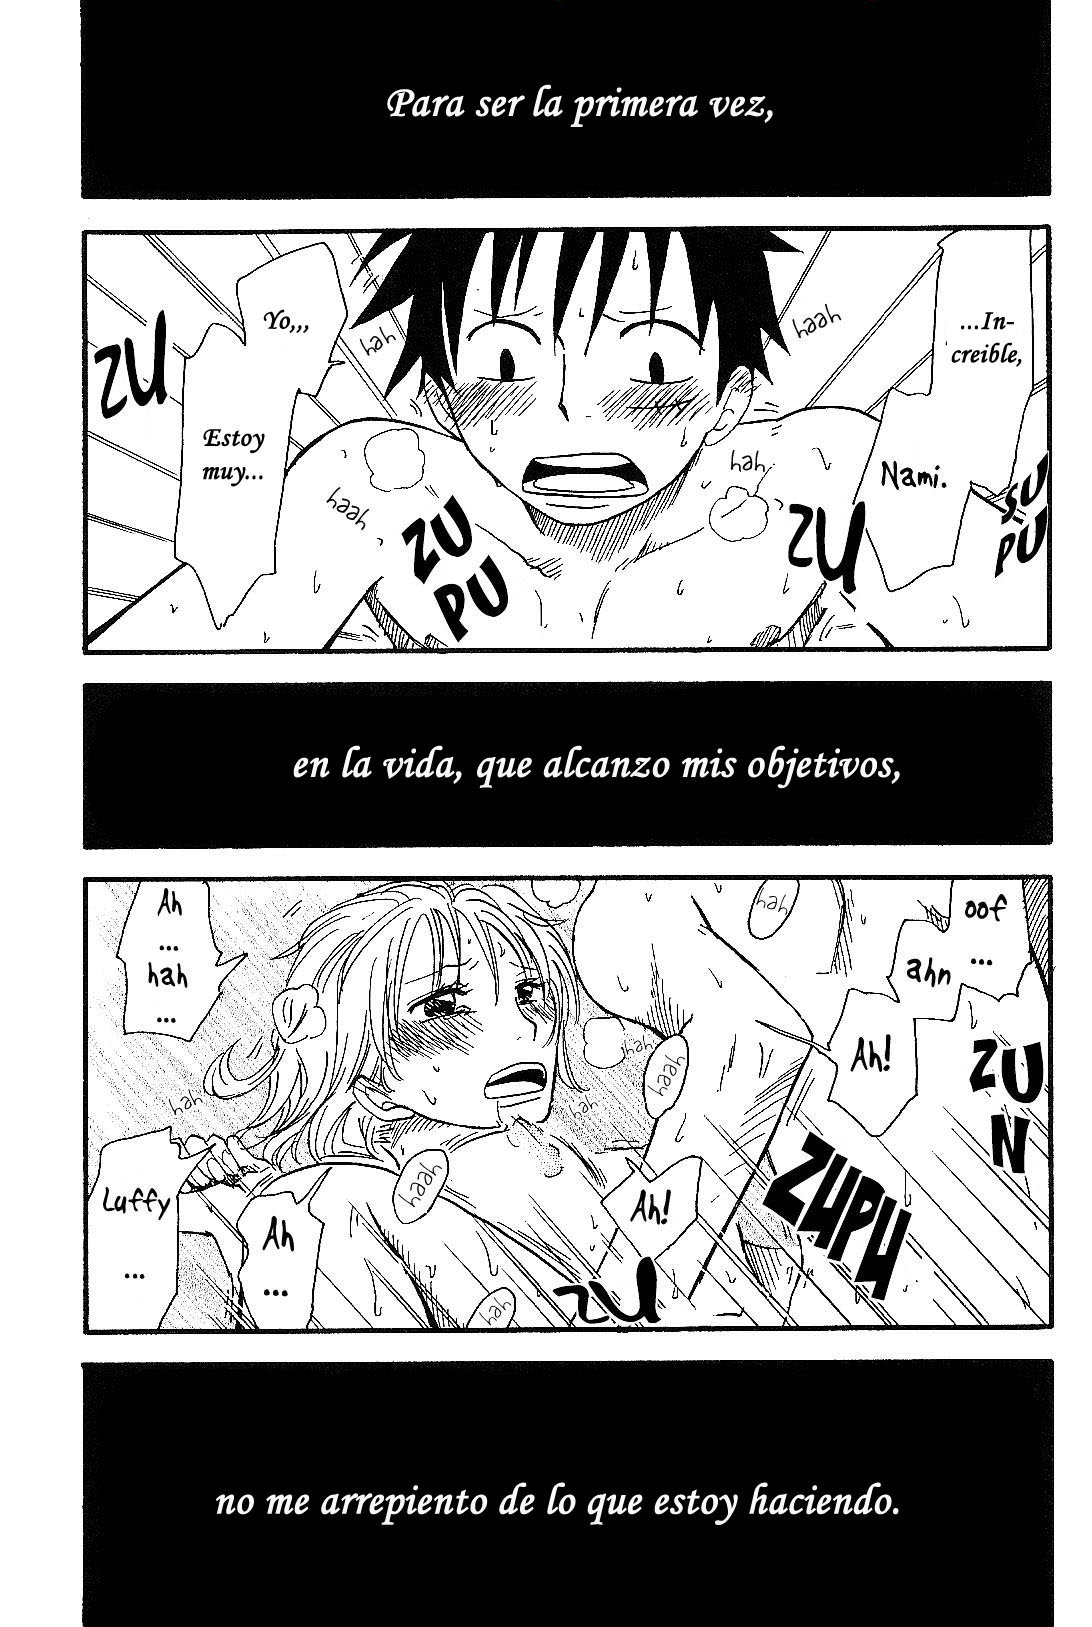 Luffy y Nami romance - 25